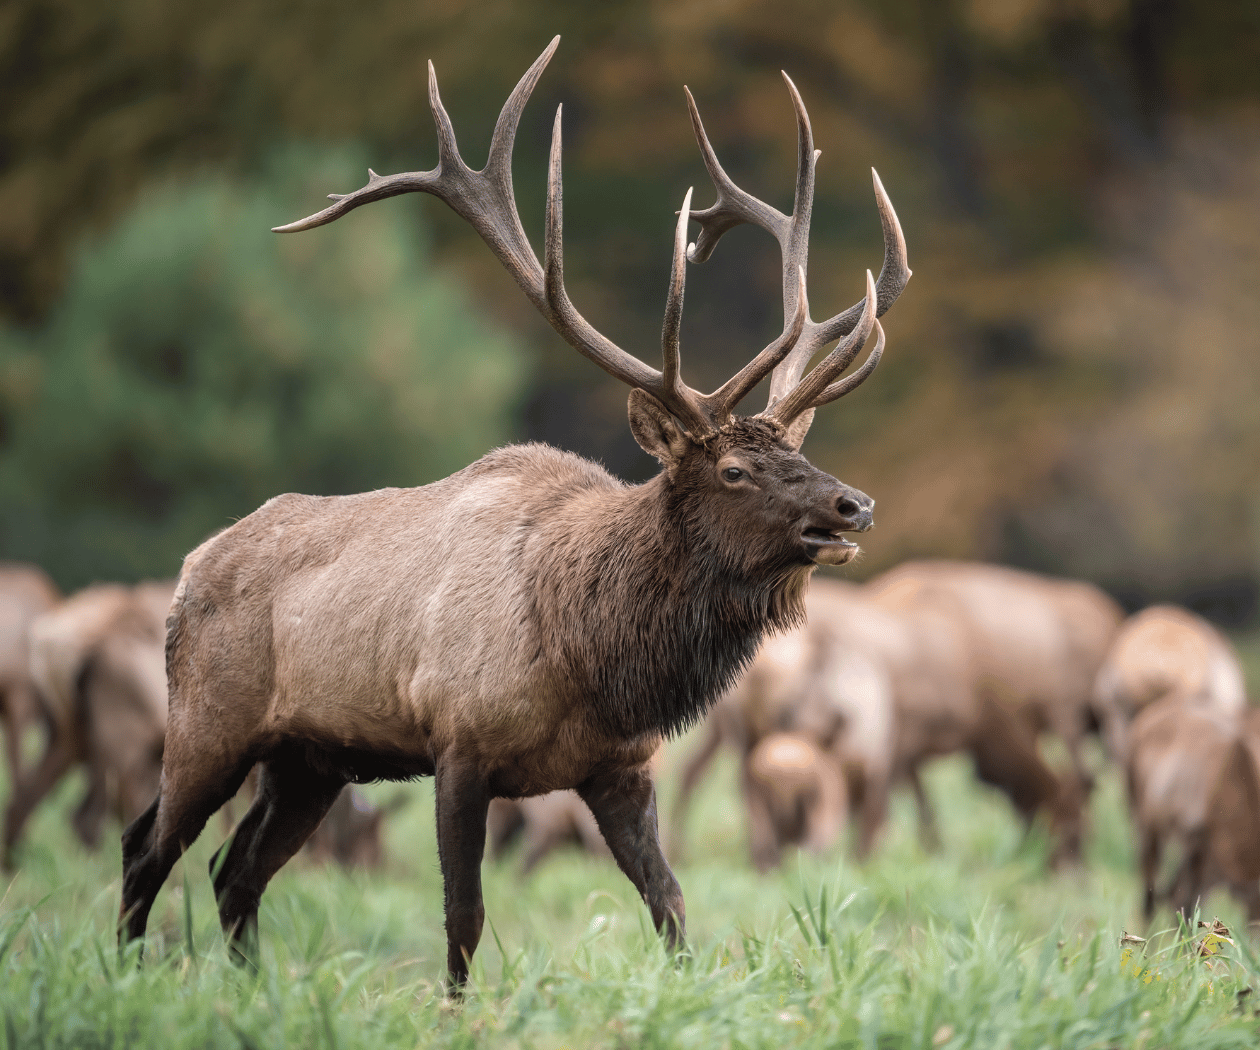 bull elk in summer with herd in background